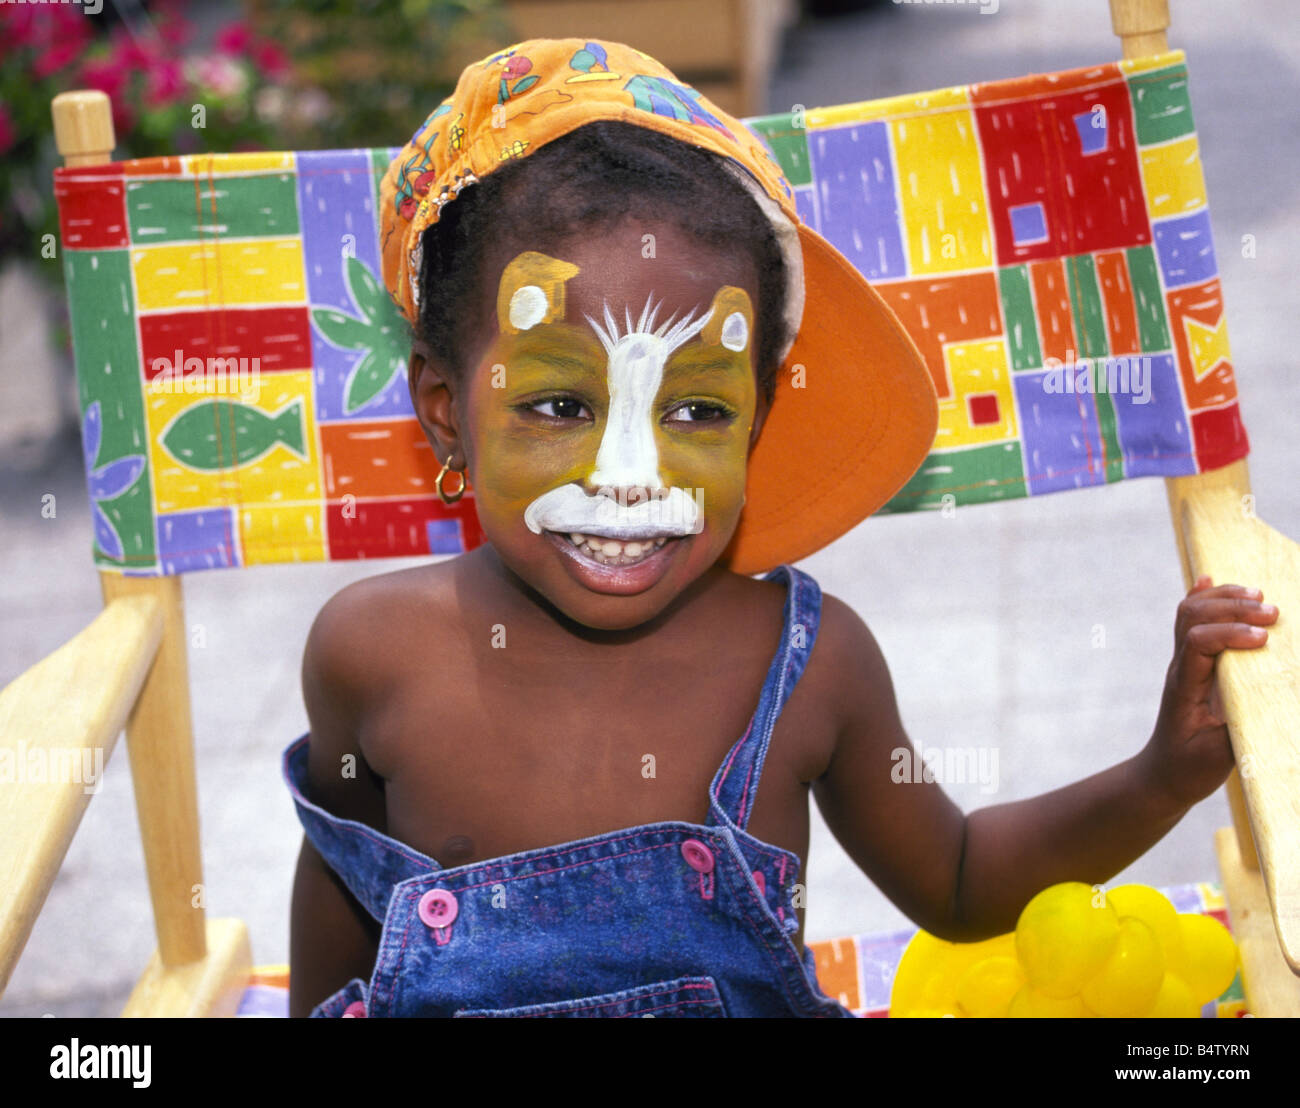 Porträt eines jungen schwarzen Mädchens, dessen Gesicht in Form einer Katze  von Kinder Gesicht Maler in einem Park in old Montreal, Kanada gemalt wurde  Stockfotografie - Alamy